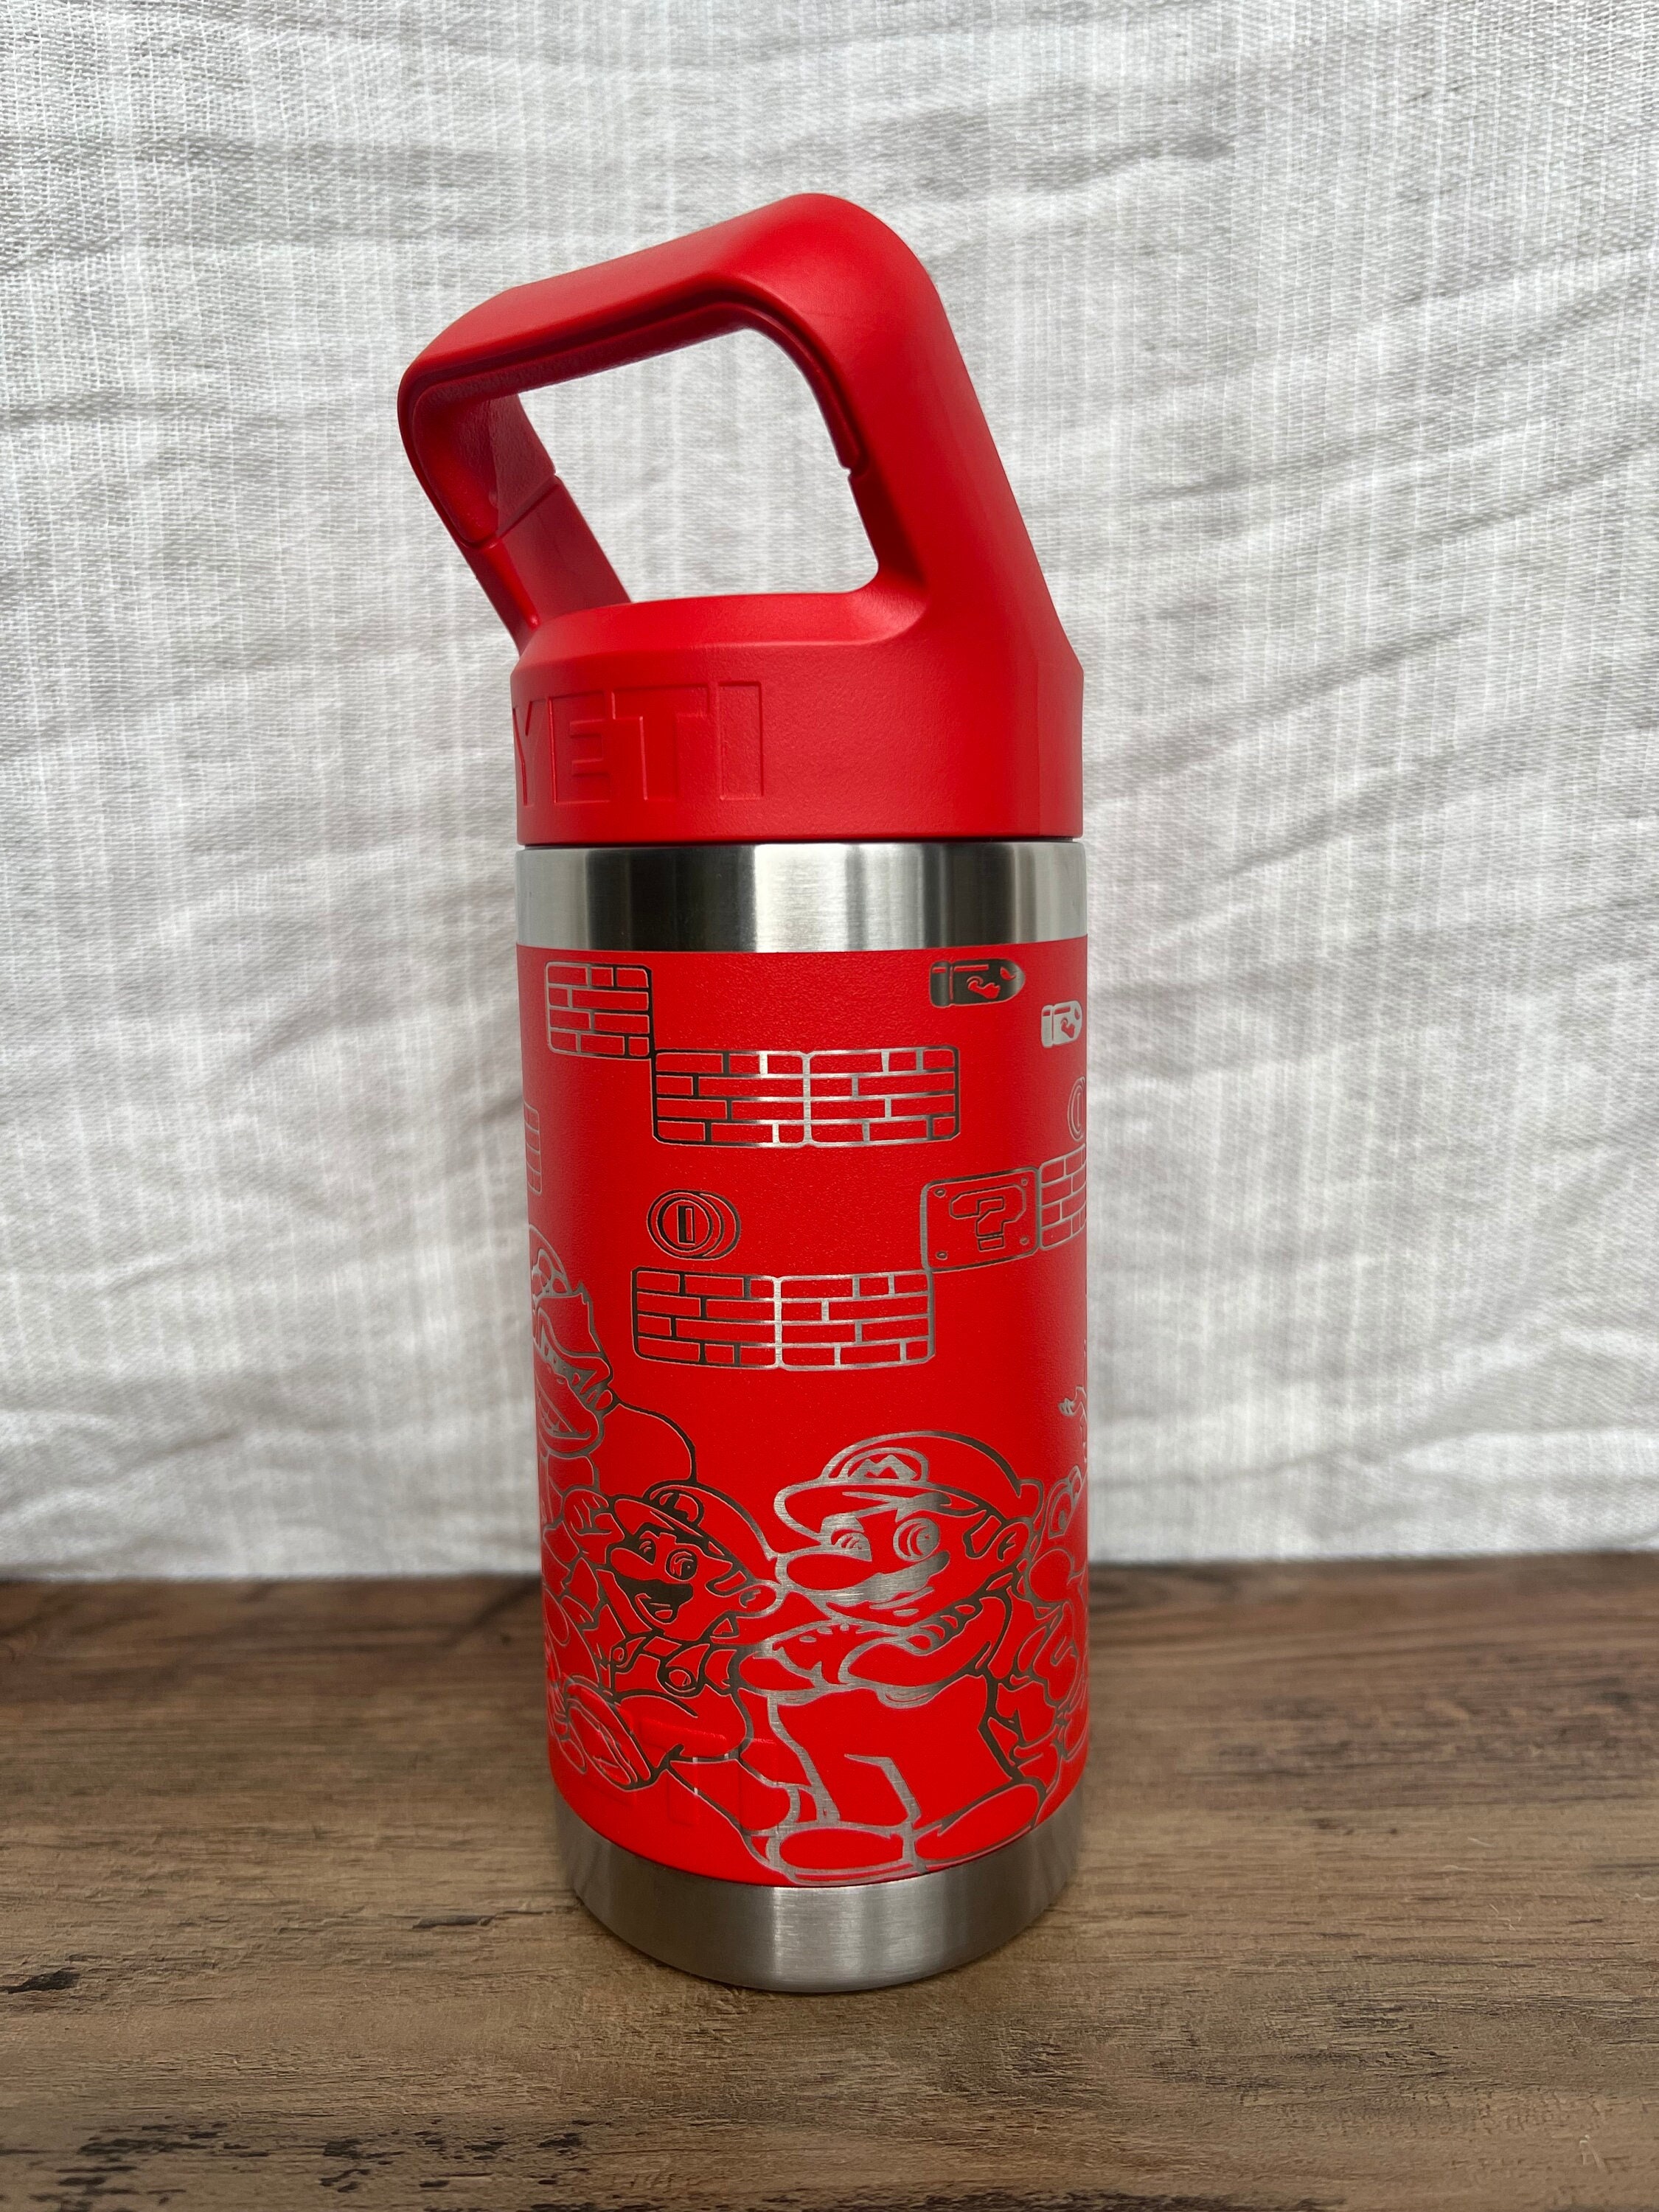 Laser Engraved Authentic Yeti 12oz Kids Bottle - Horse - ImpressMeGifts